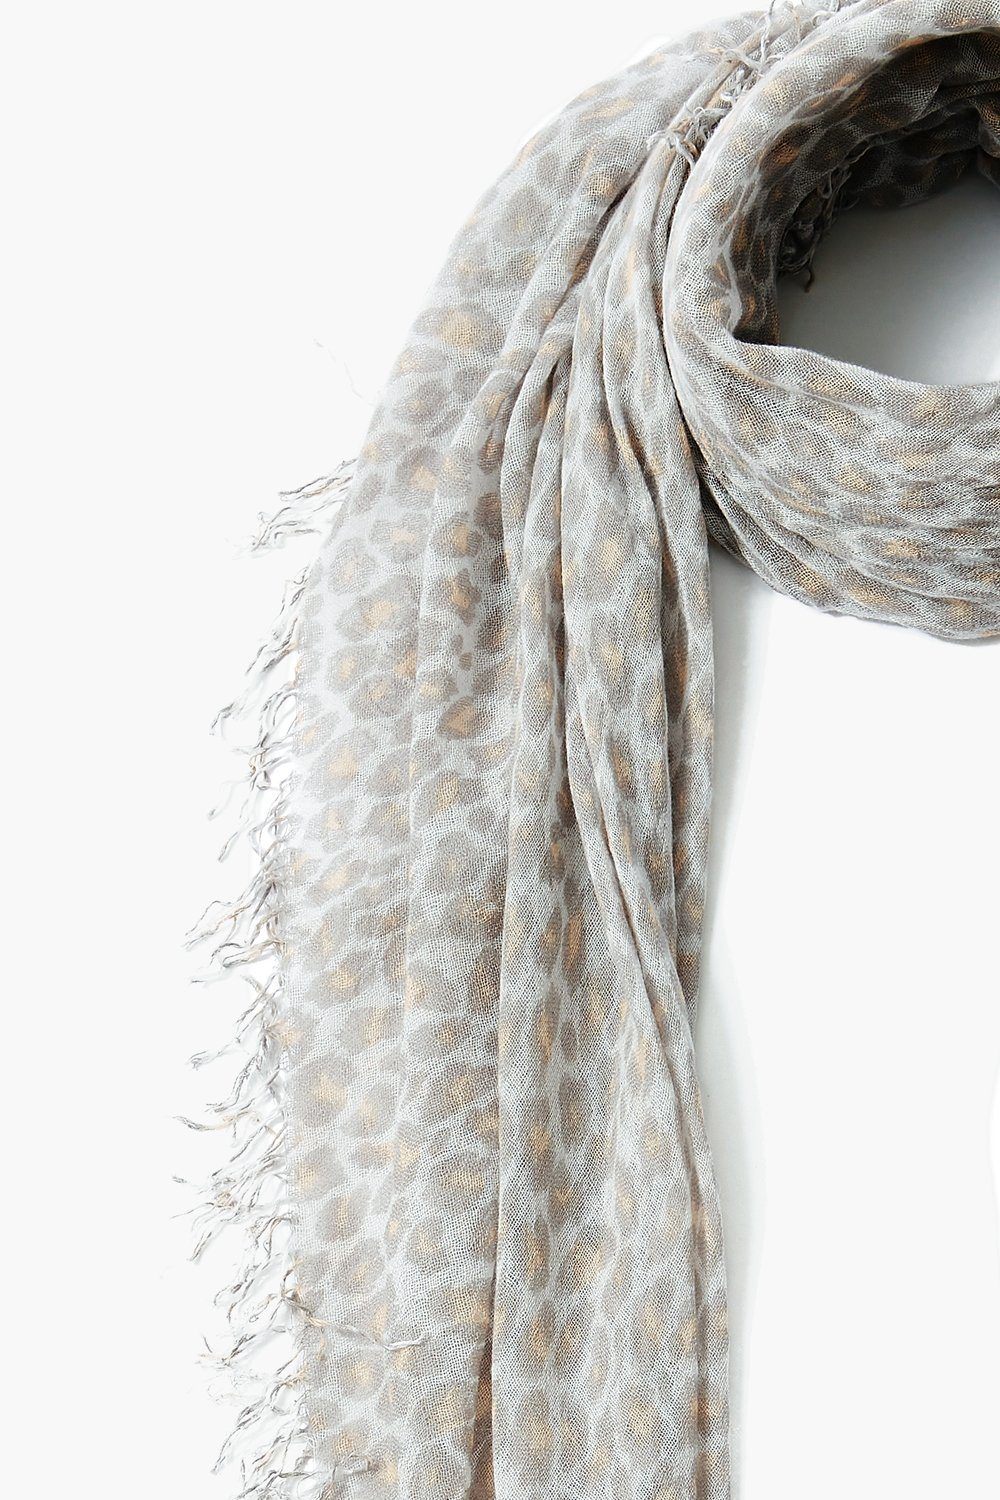 2001 Leopard Silk Cashmere Scarf, Authentic & Vintage